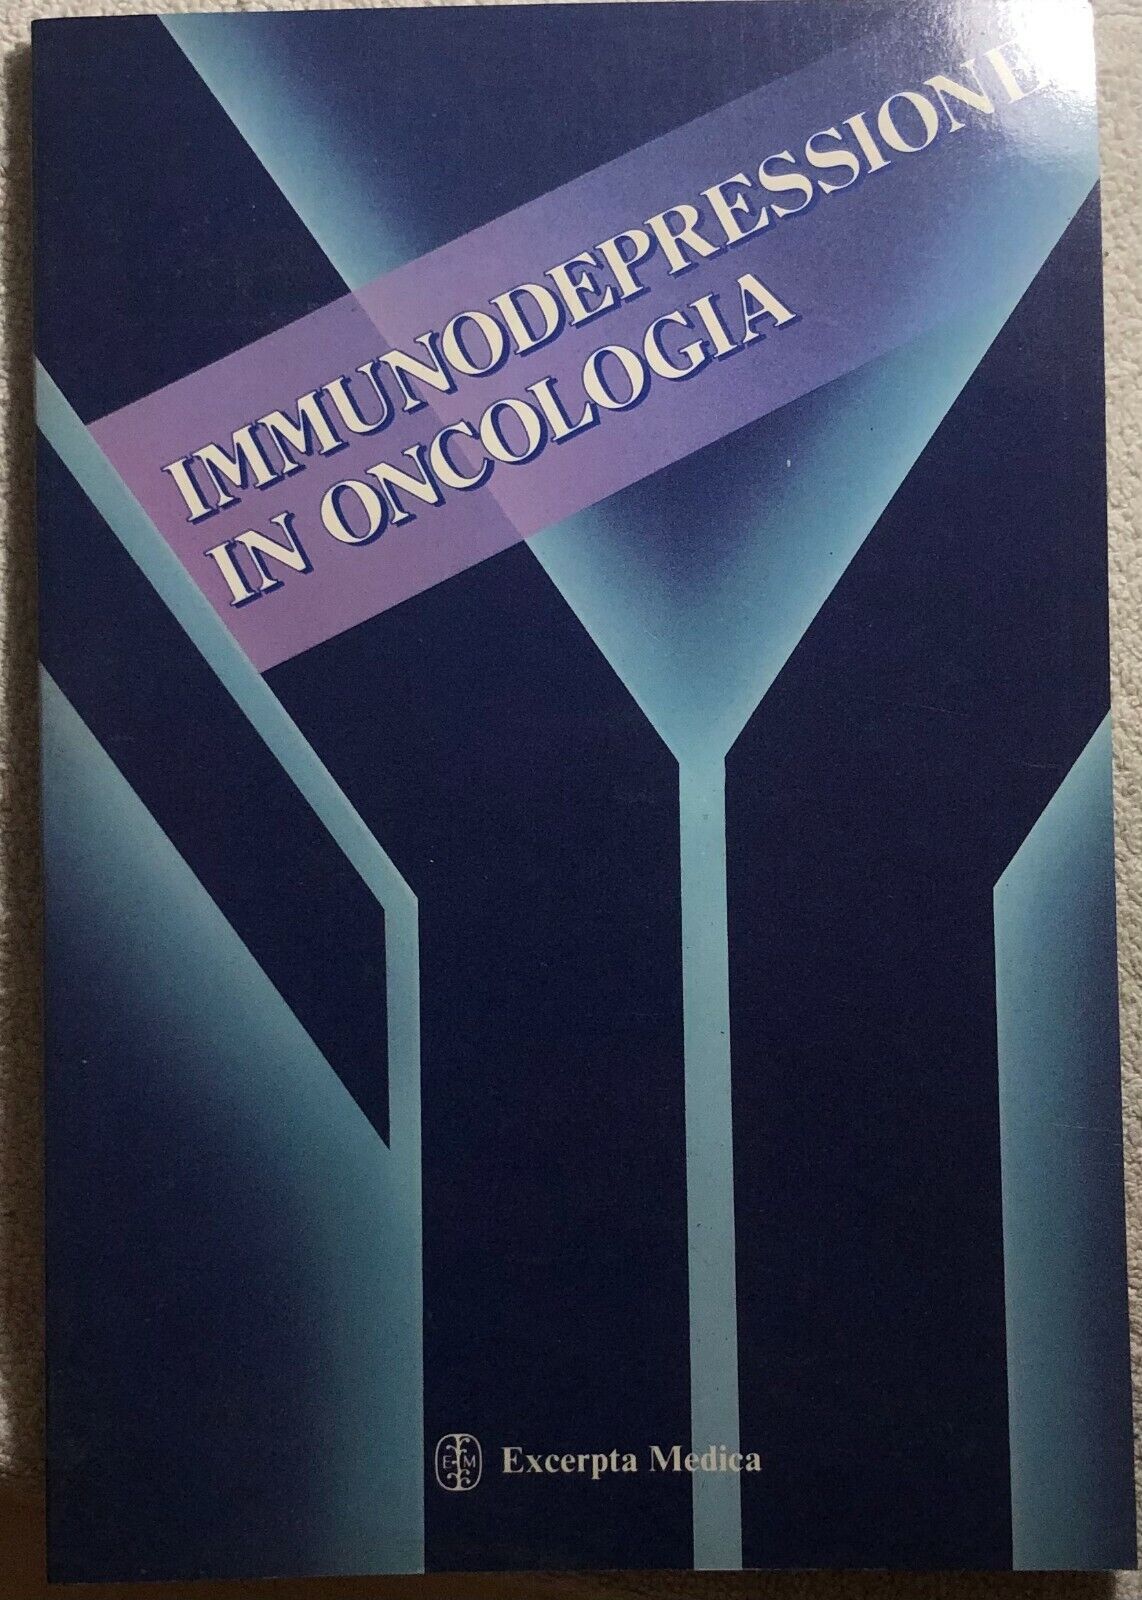 Immunodepressione in oncologia di Aa.vv.,  1991,  Excerpta Medica